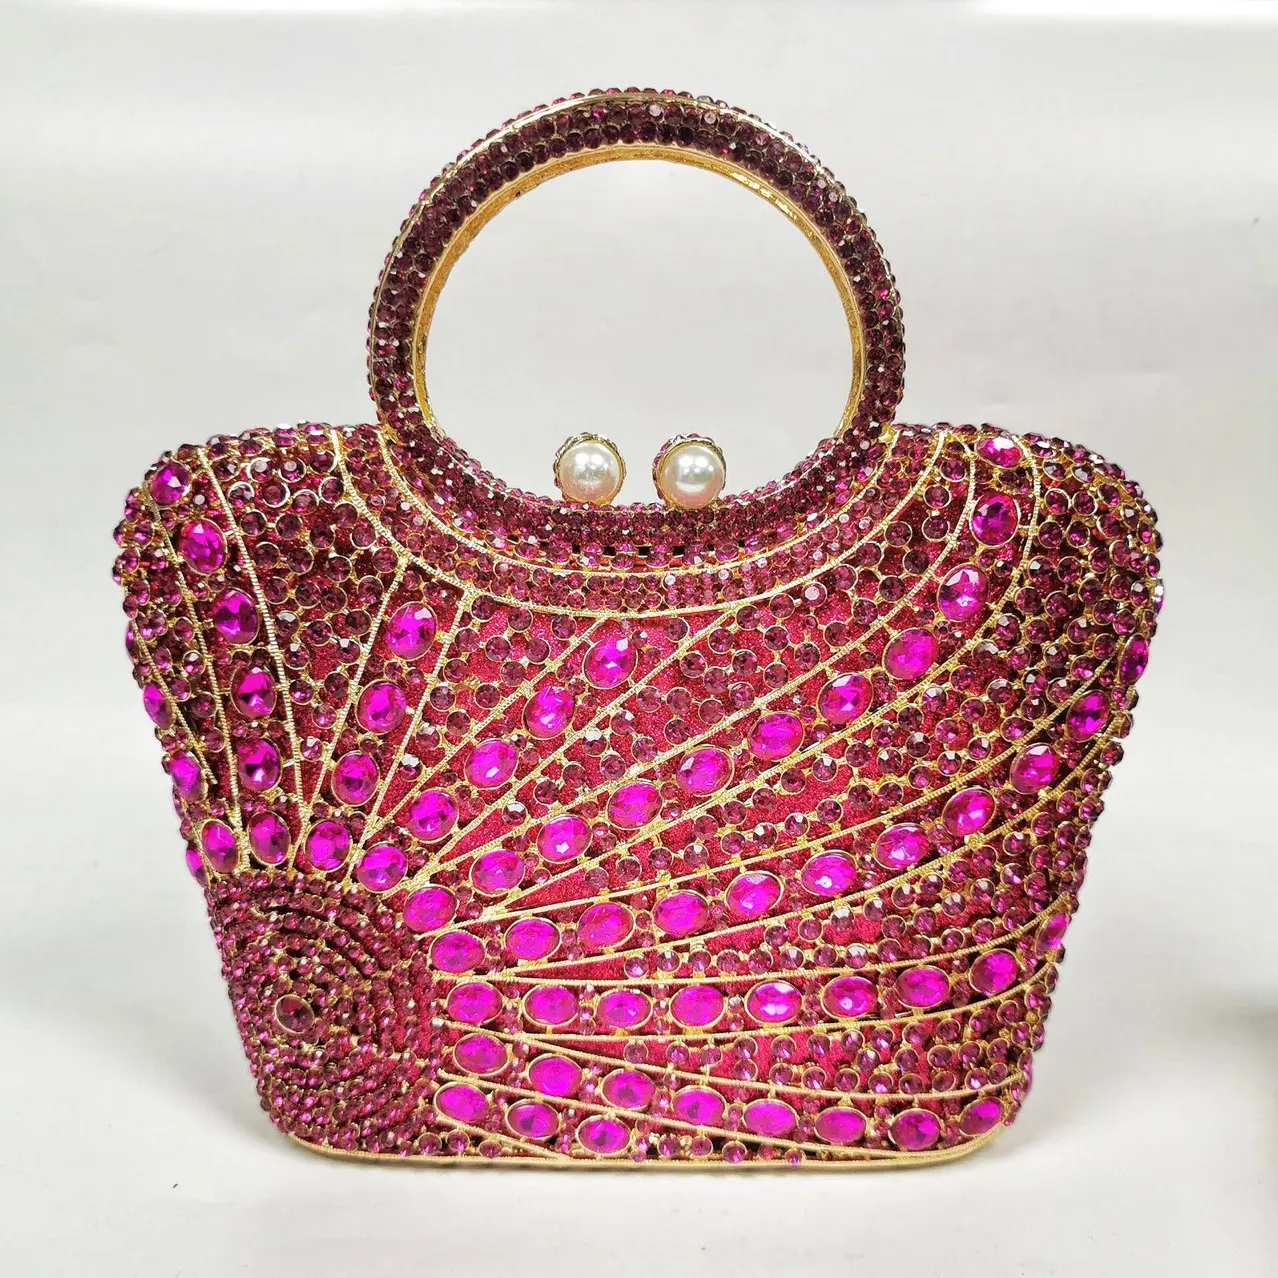 Amiqi MRY117 pochette de soirée de luxe avec pompon et diamants chaîne anneau en métal poignée cristal brillant seau sacs de soirée pochette